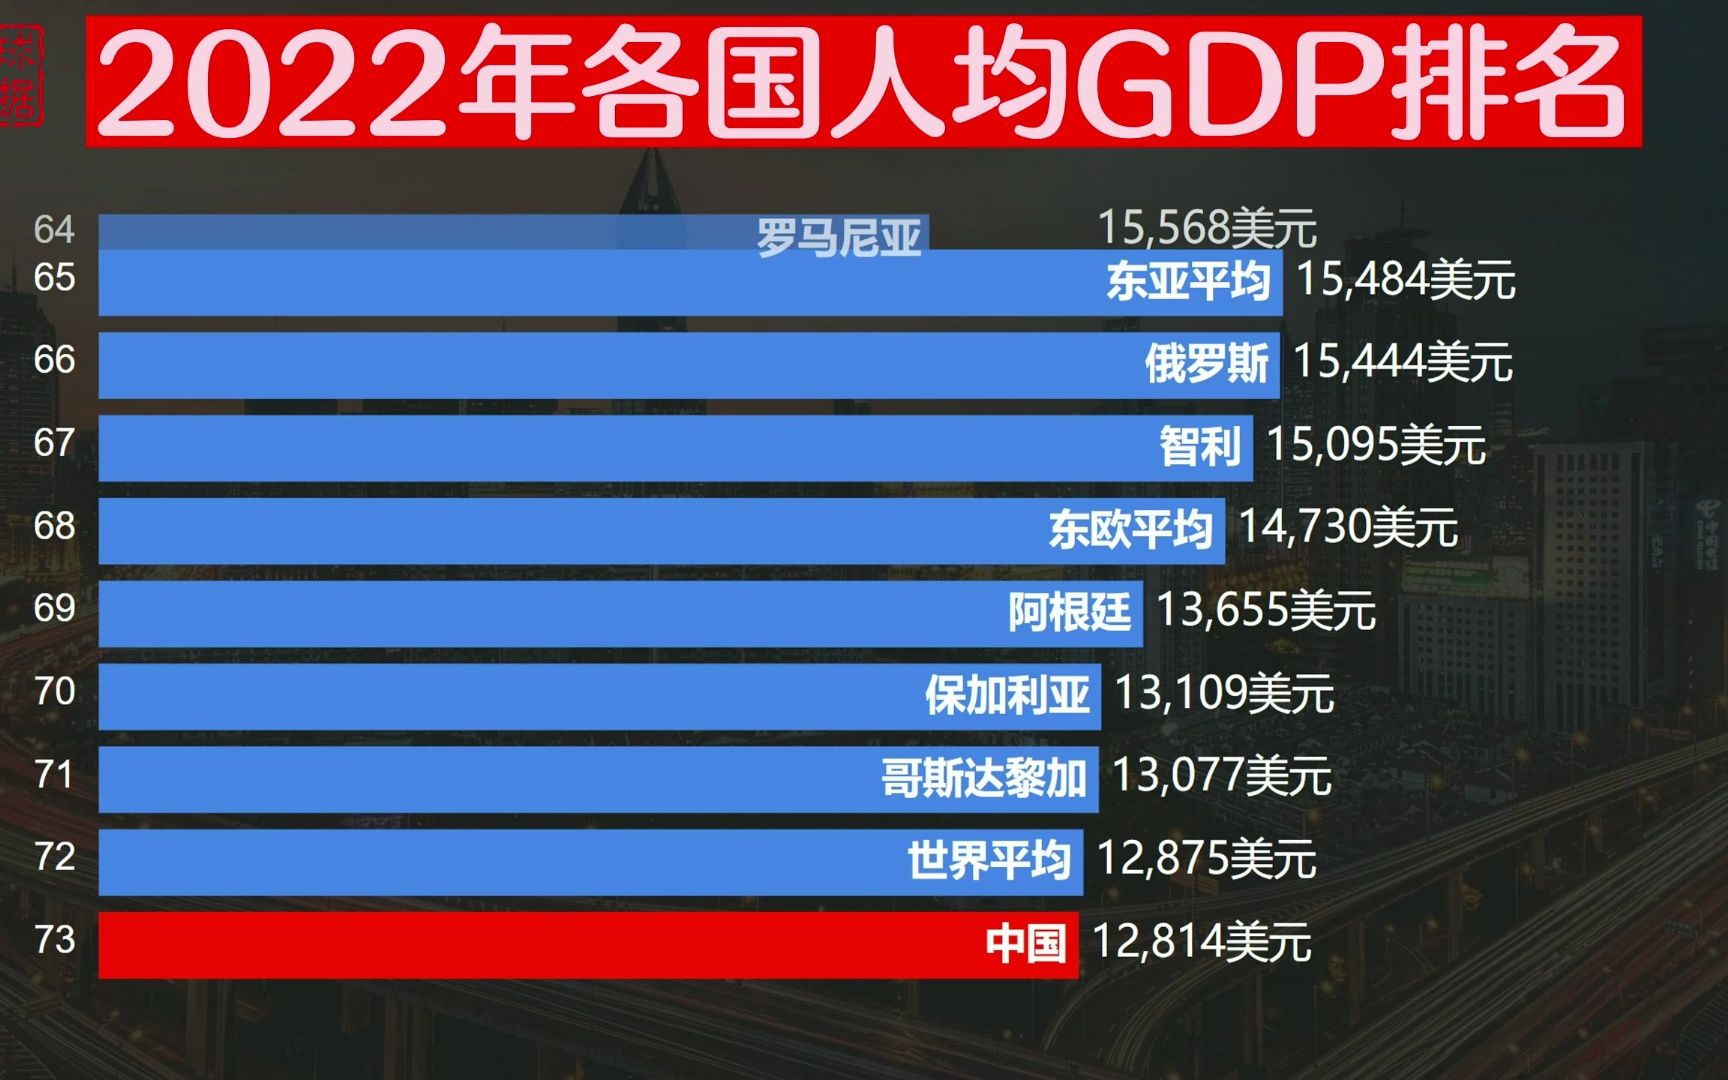 2022世界各国人均gdp排名,中国低于世界平均,3国突破10万美元